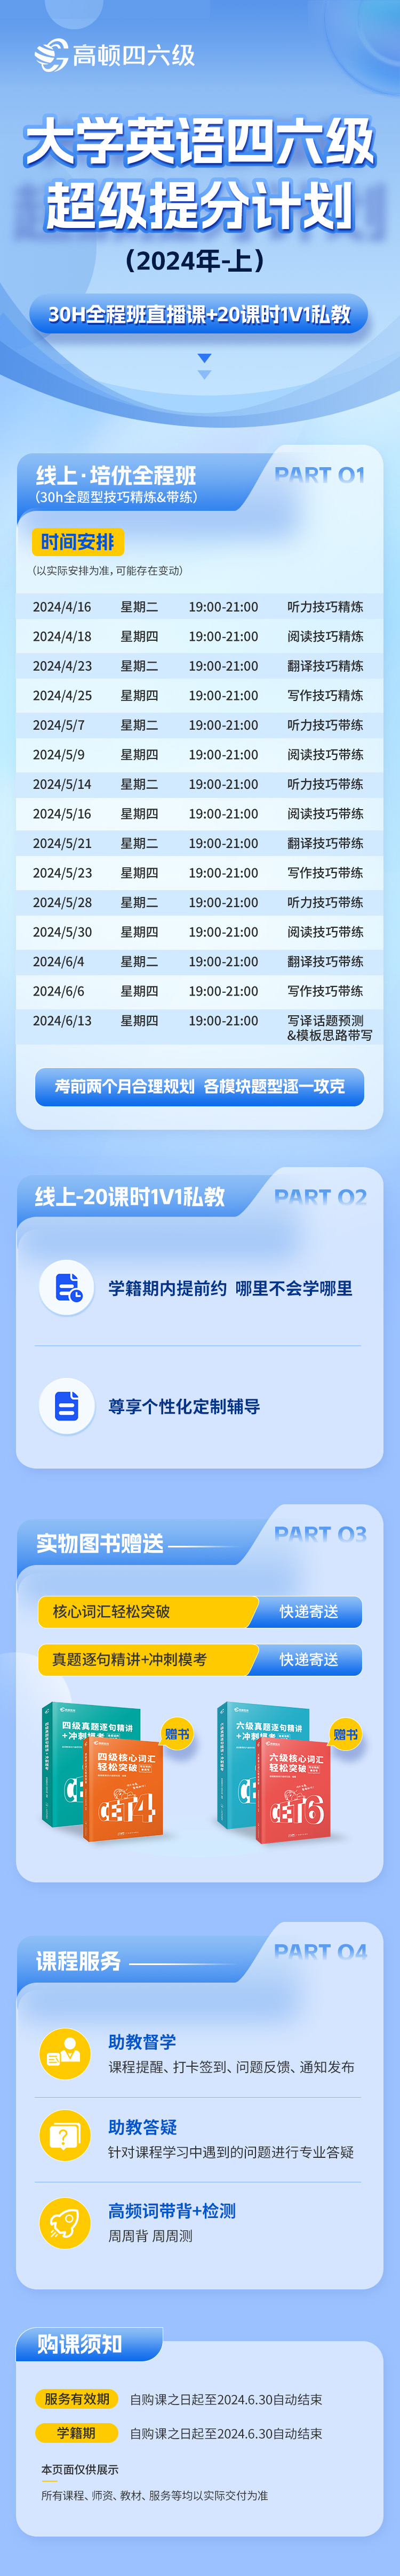 https://simg01.gaodunwangxiao.com/uploadfiles/product-center/202404/28/b42aa_20240428112628.jpg